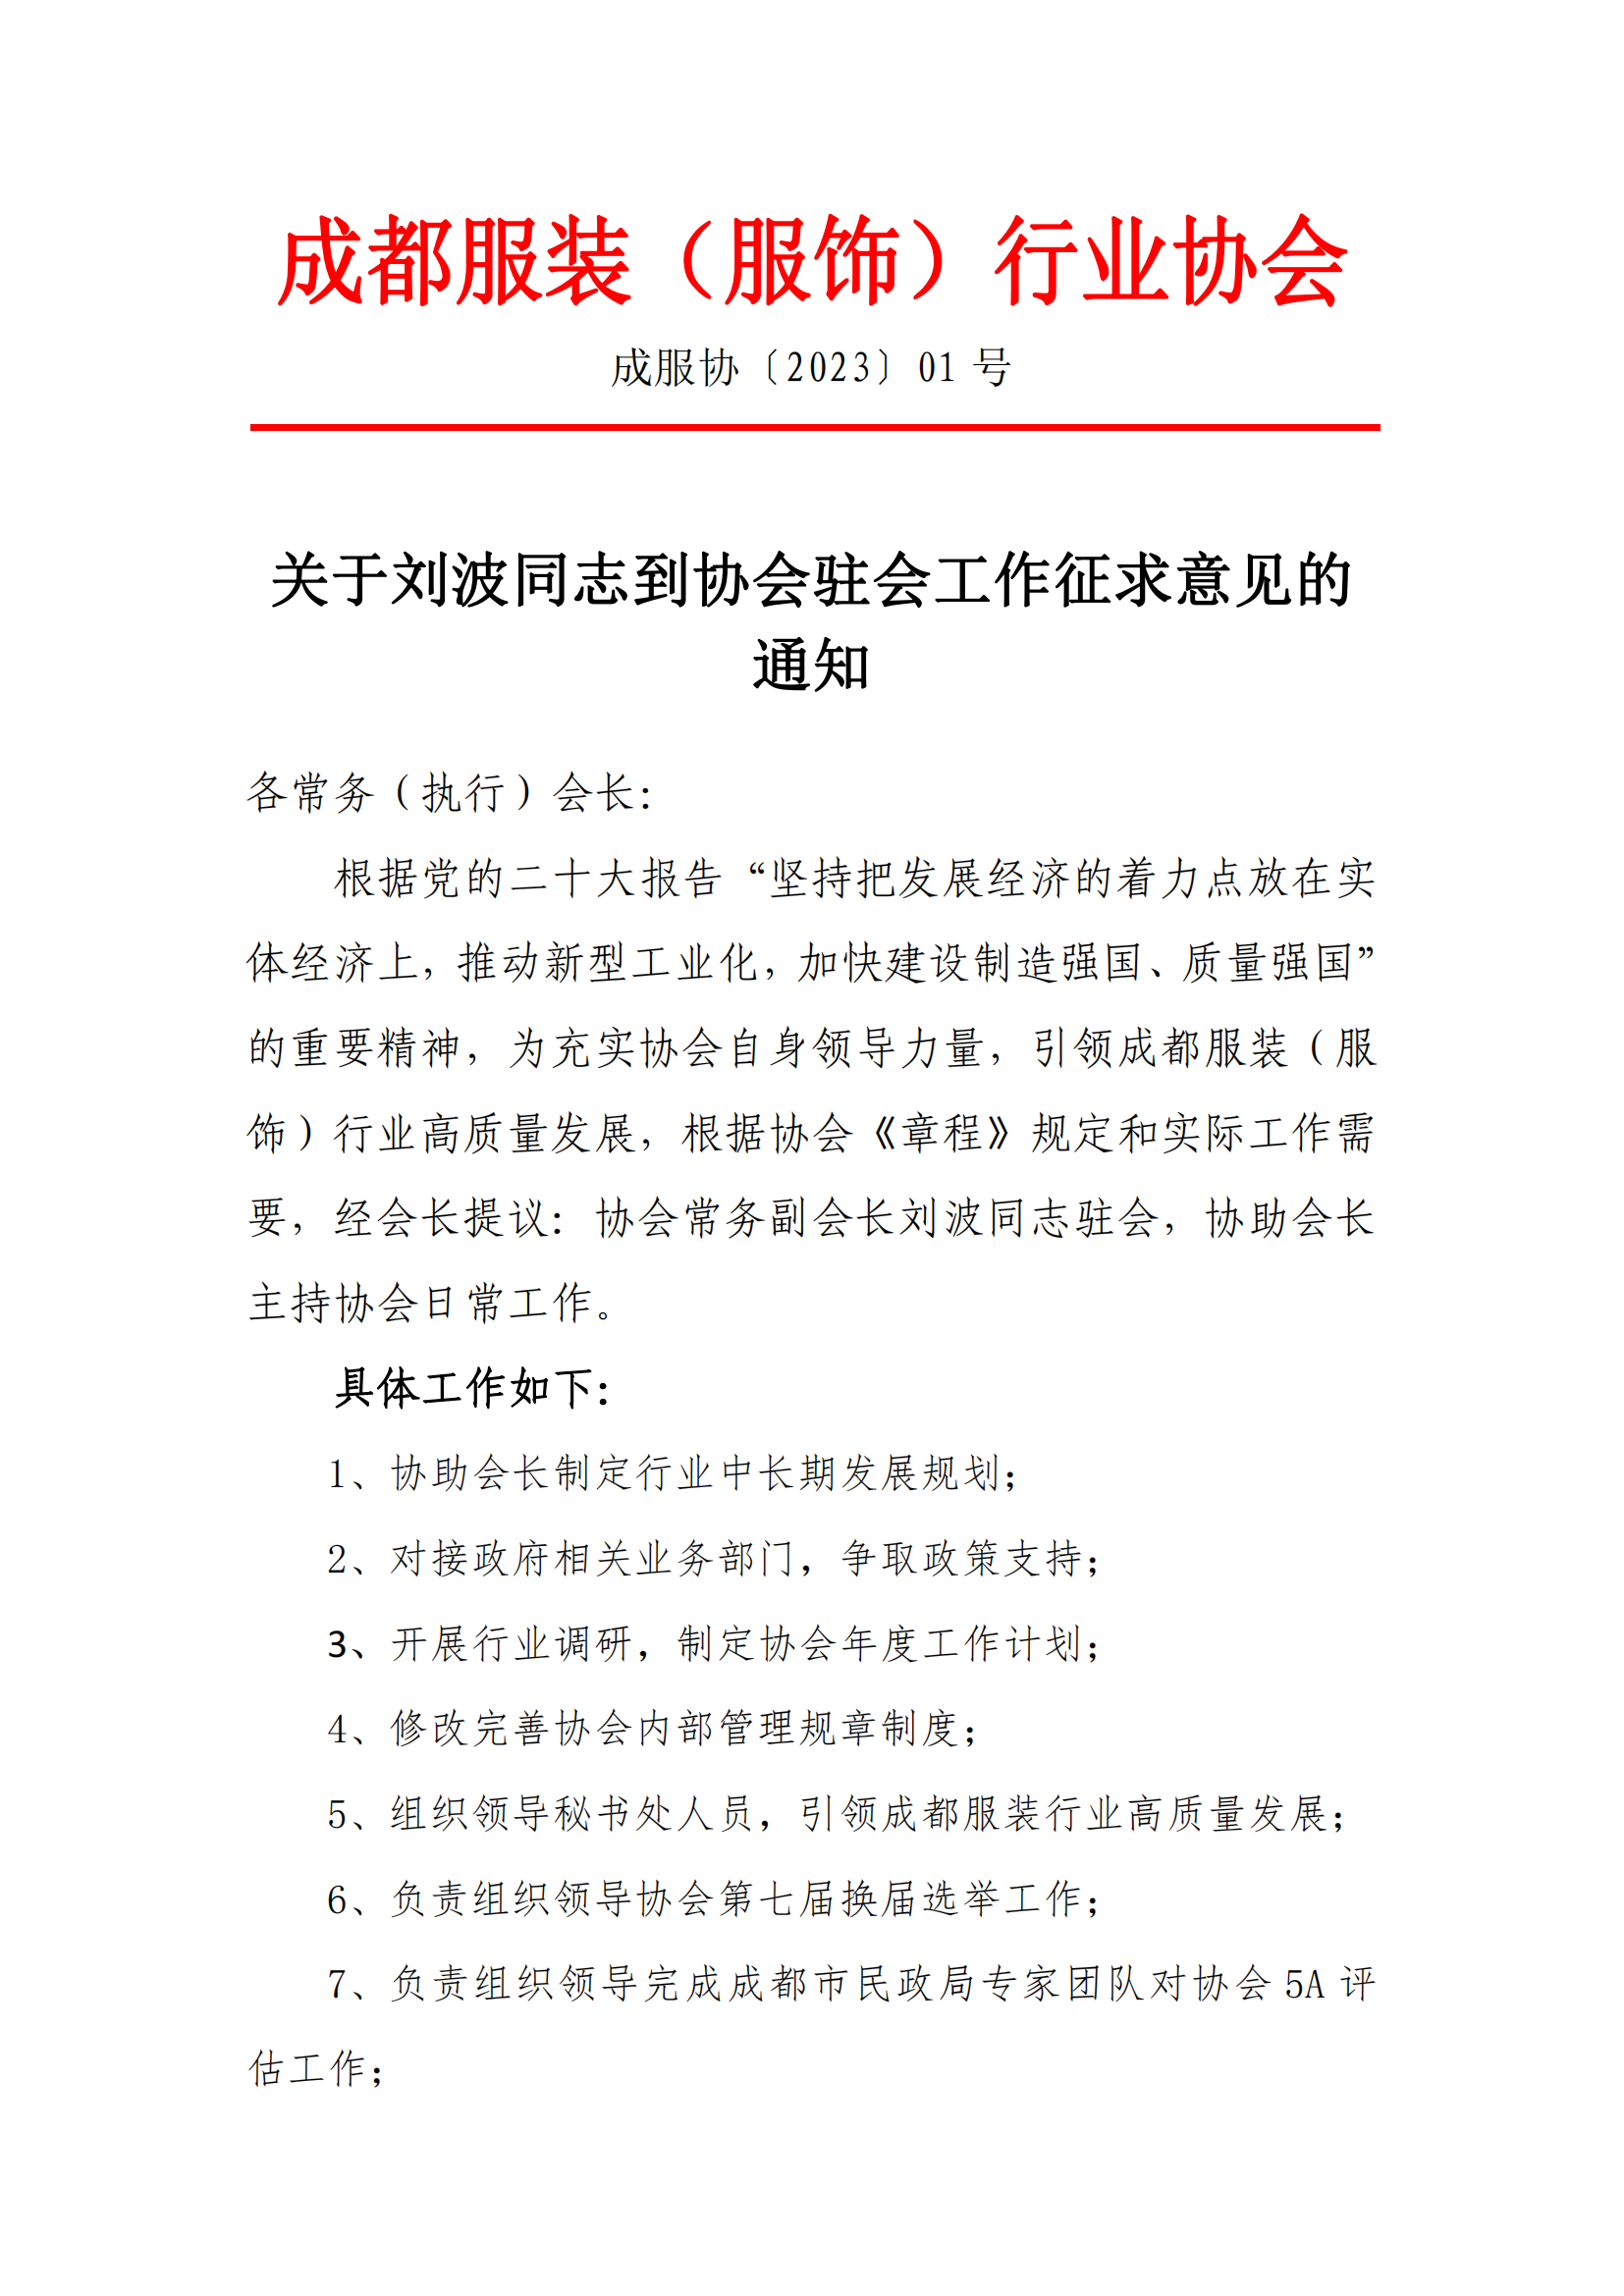 关于刘波同志到协会驻会工作征求意见的通知.png